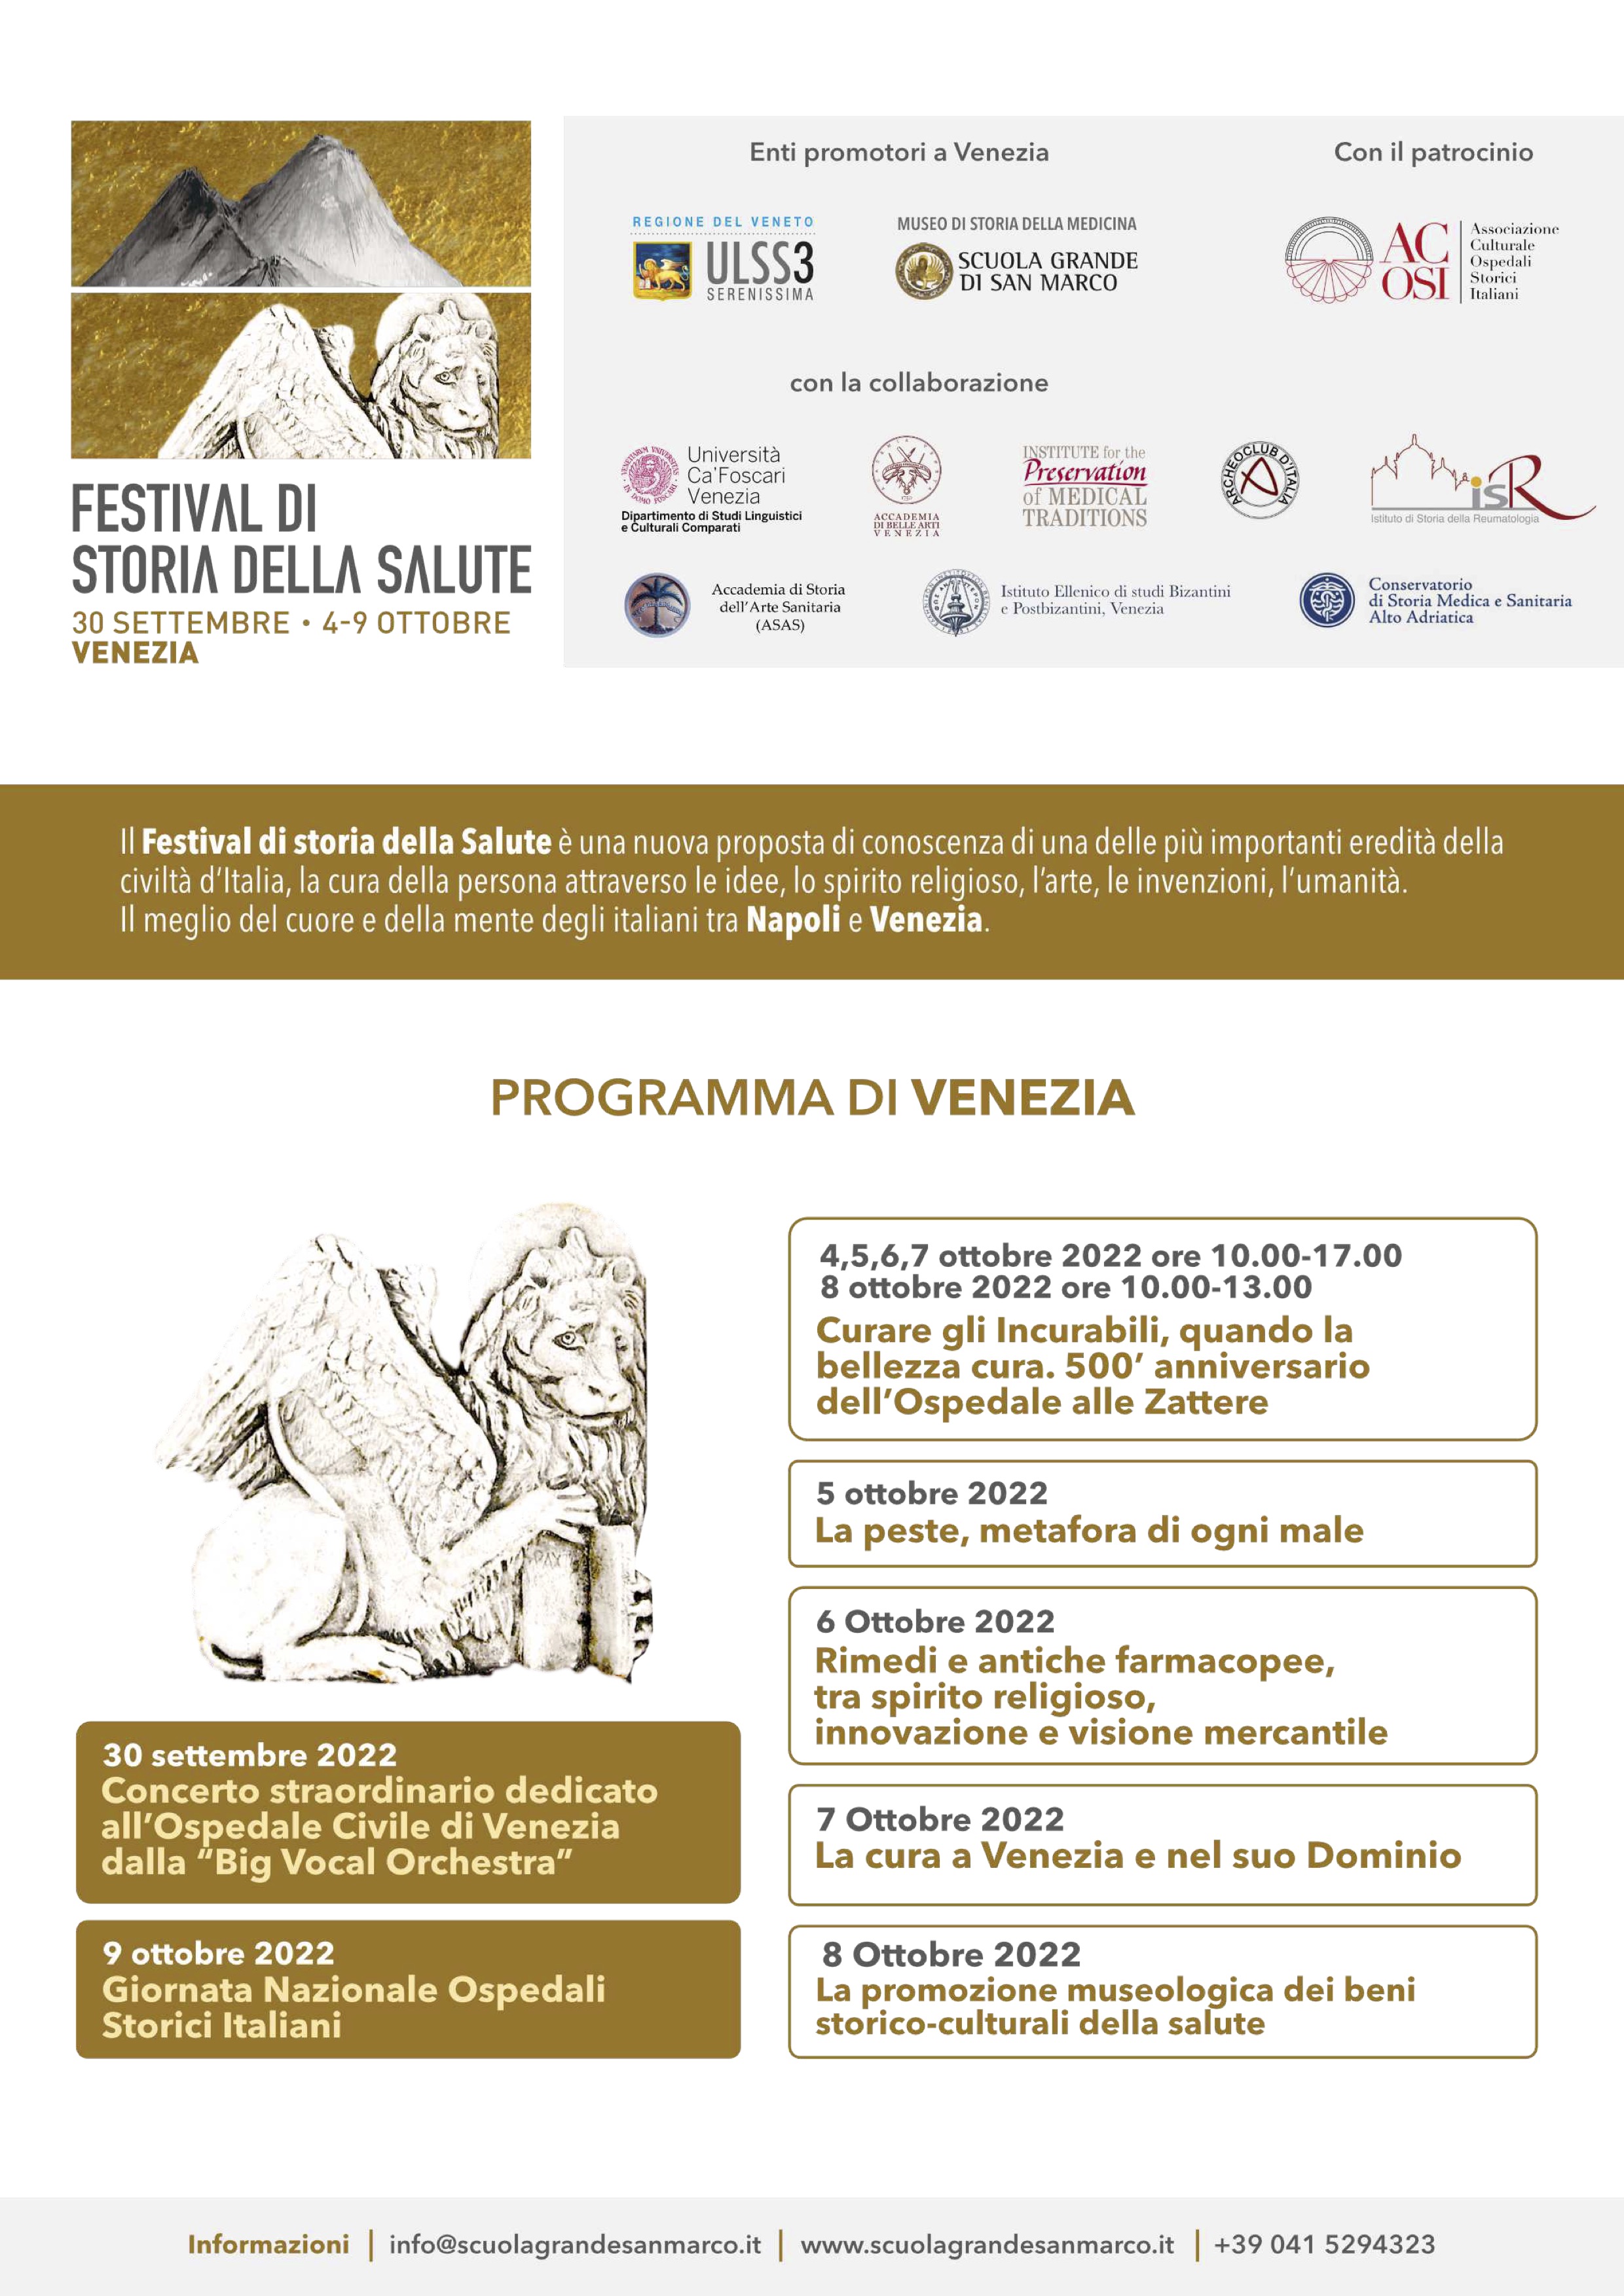 Festival di Storia della Salute Venezia